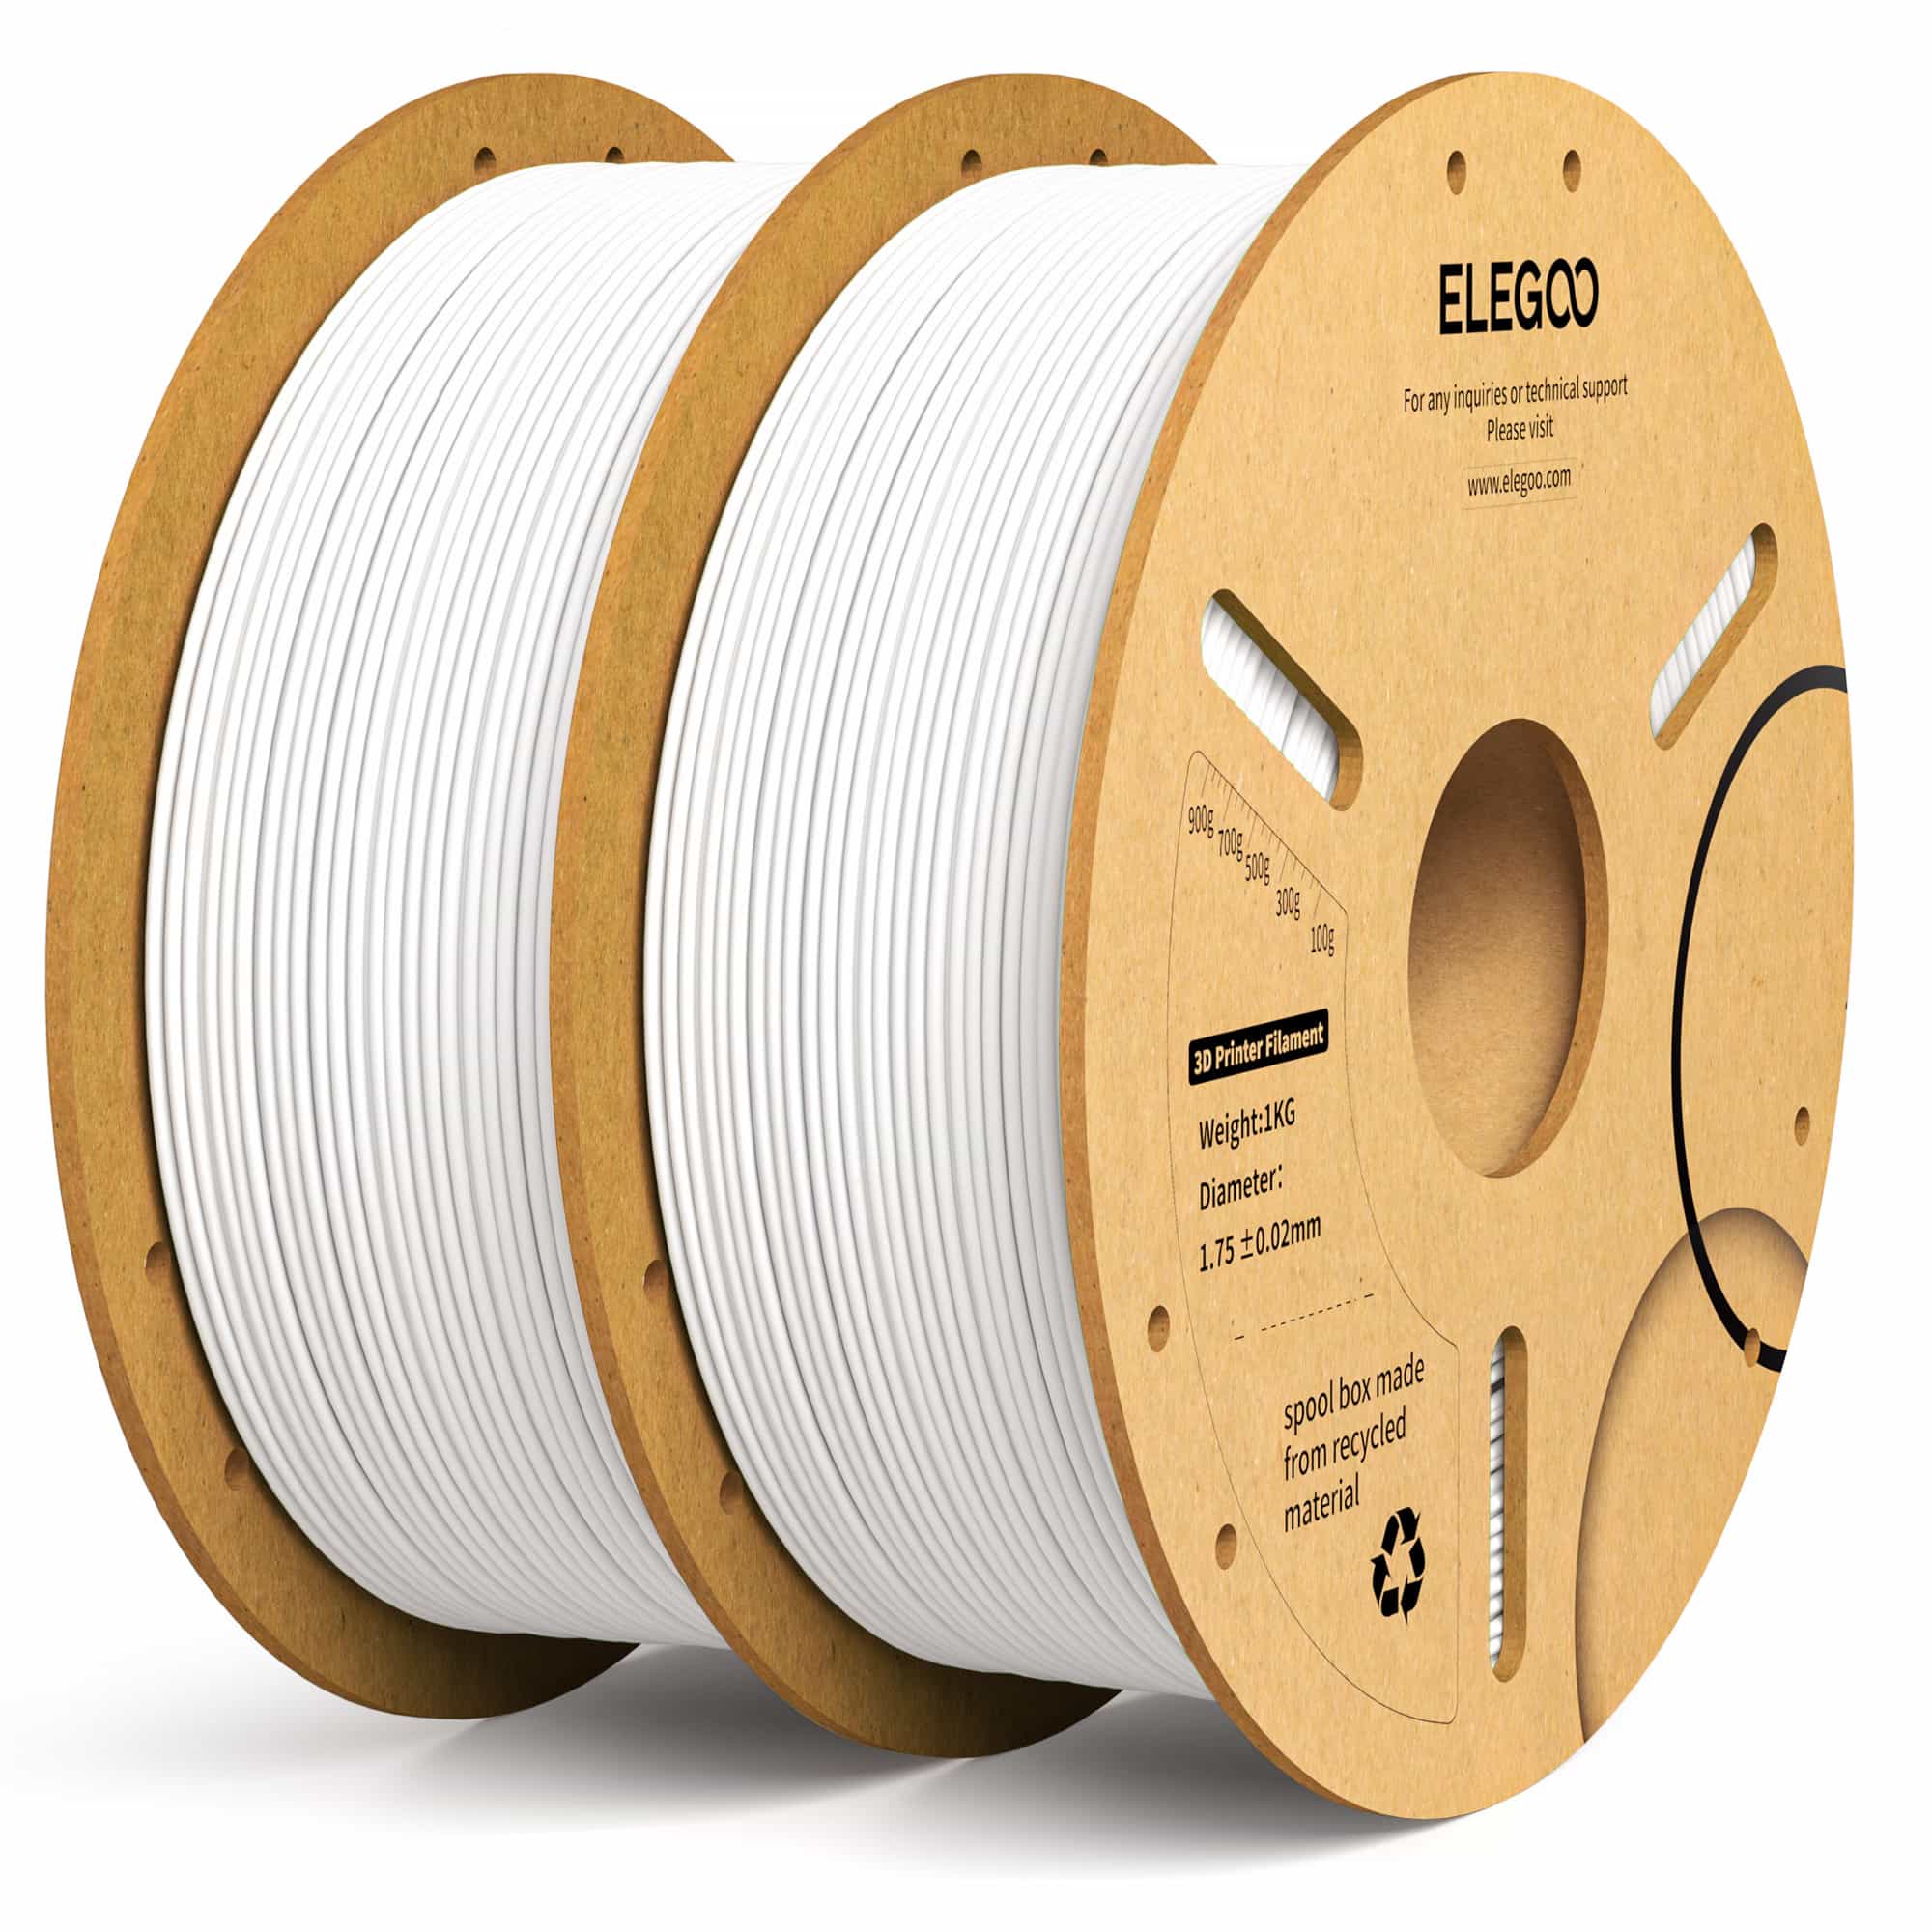 ELEGOO ASA Filament 1.75mm Colored 2KG – ELEGOO EU